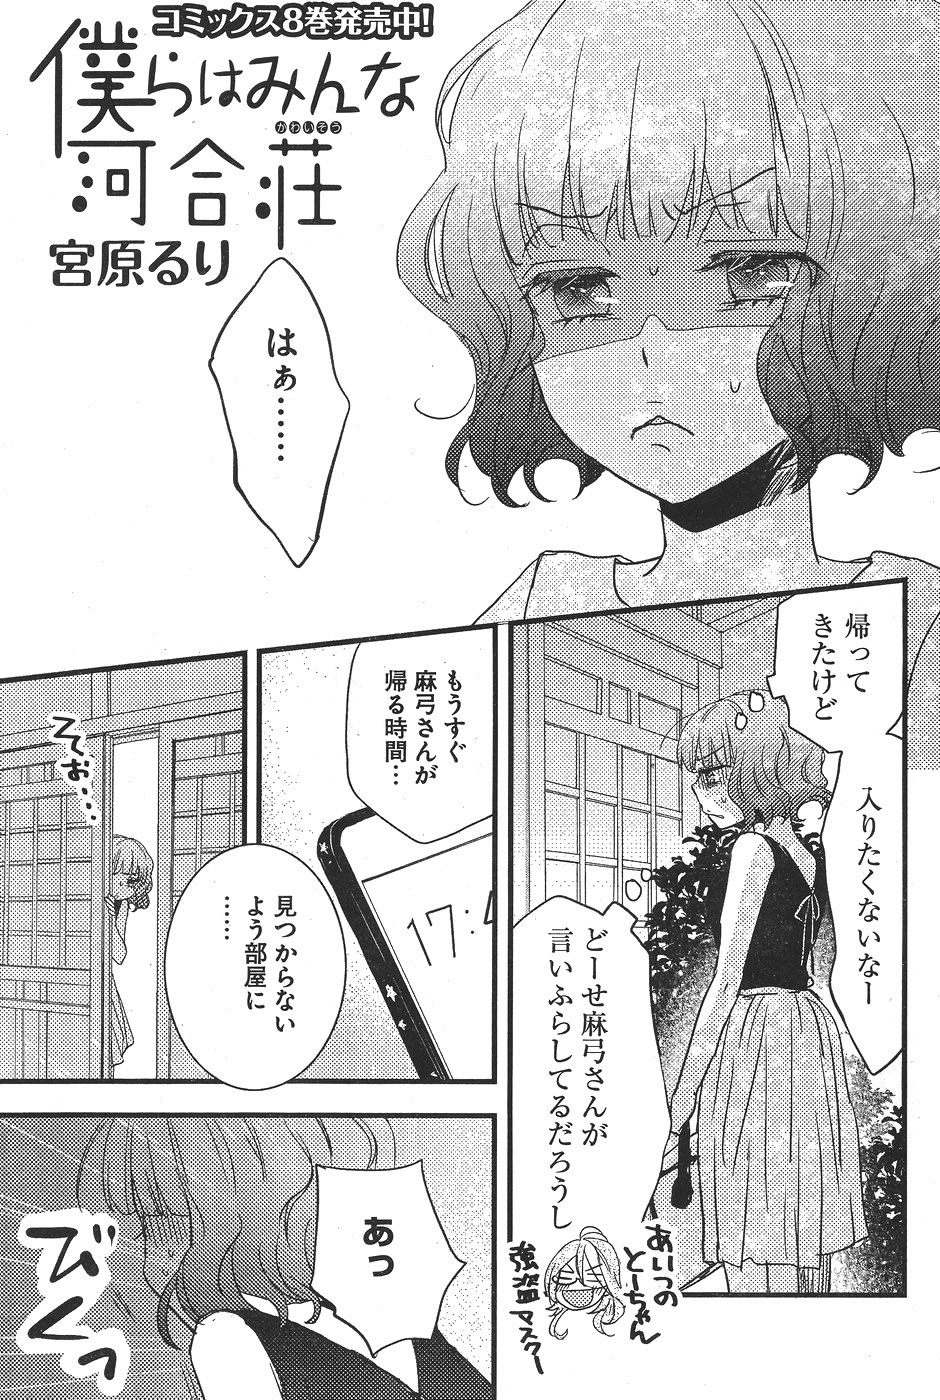 Bokura wa Minna Kawaisou - Chapter 73 - Page 1